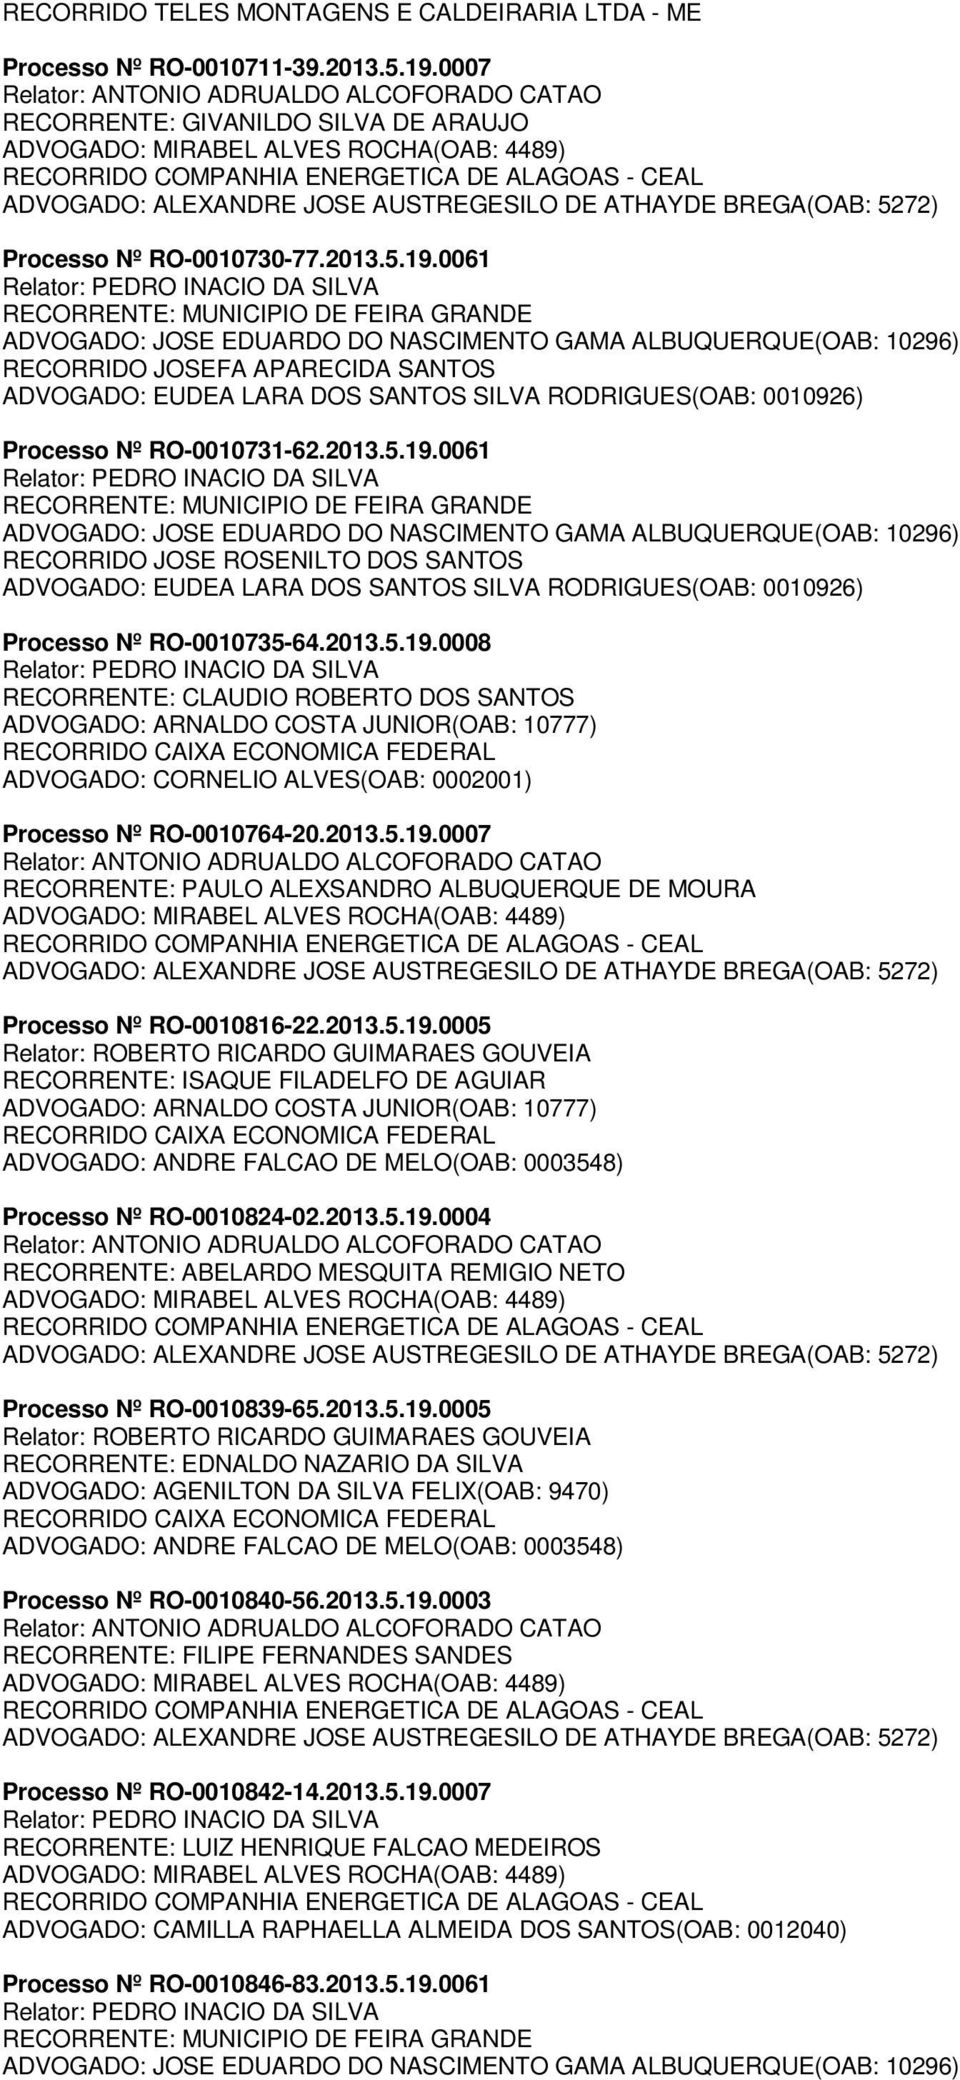 2013.5.19.0007 RECORRENTE: PAULO ALEXSANDRO ALBUQUERQUE DE MOURA Processo Nº RO-0010816-22.2013.5.19.0005 RECORRENTE: ISAQUE FILADELFO DE AGUIAR ADVOGADO: ARNALDO COSTA JUNIOR(OAB: 10777) ADVOGADO: ANDRE FALCAO DE MELO(OAB: 0003548) Processo Nº RO-0010824-02.